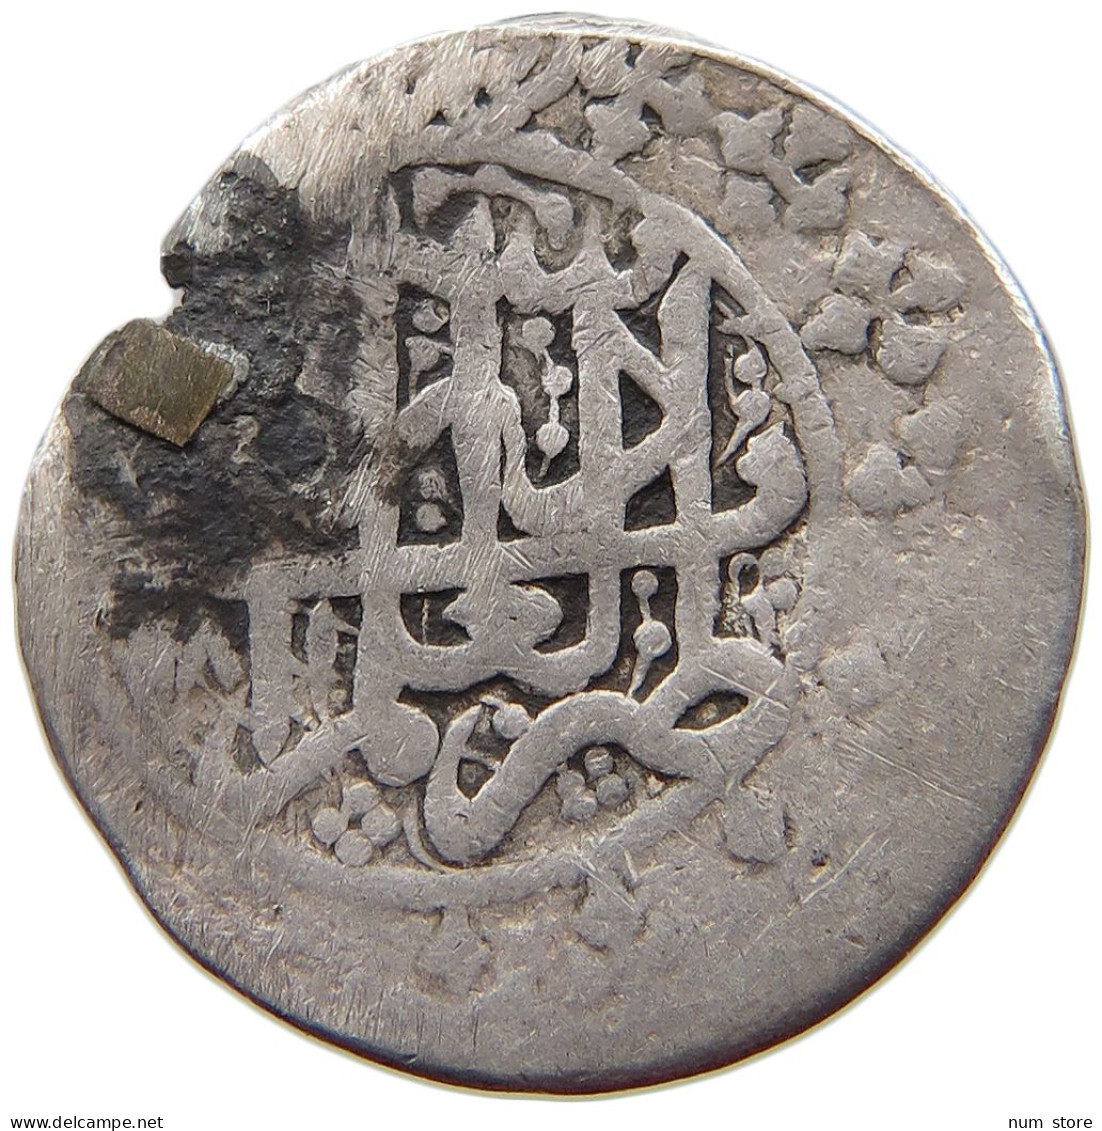 ZANDIDEN RIYAL 1151 SCHIRAZ 1750-1794 #MA 017261 - Orientalische Münzen